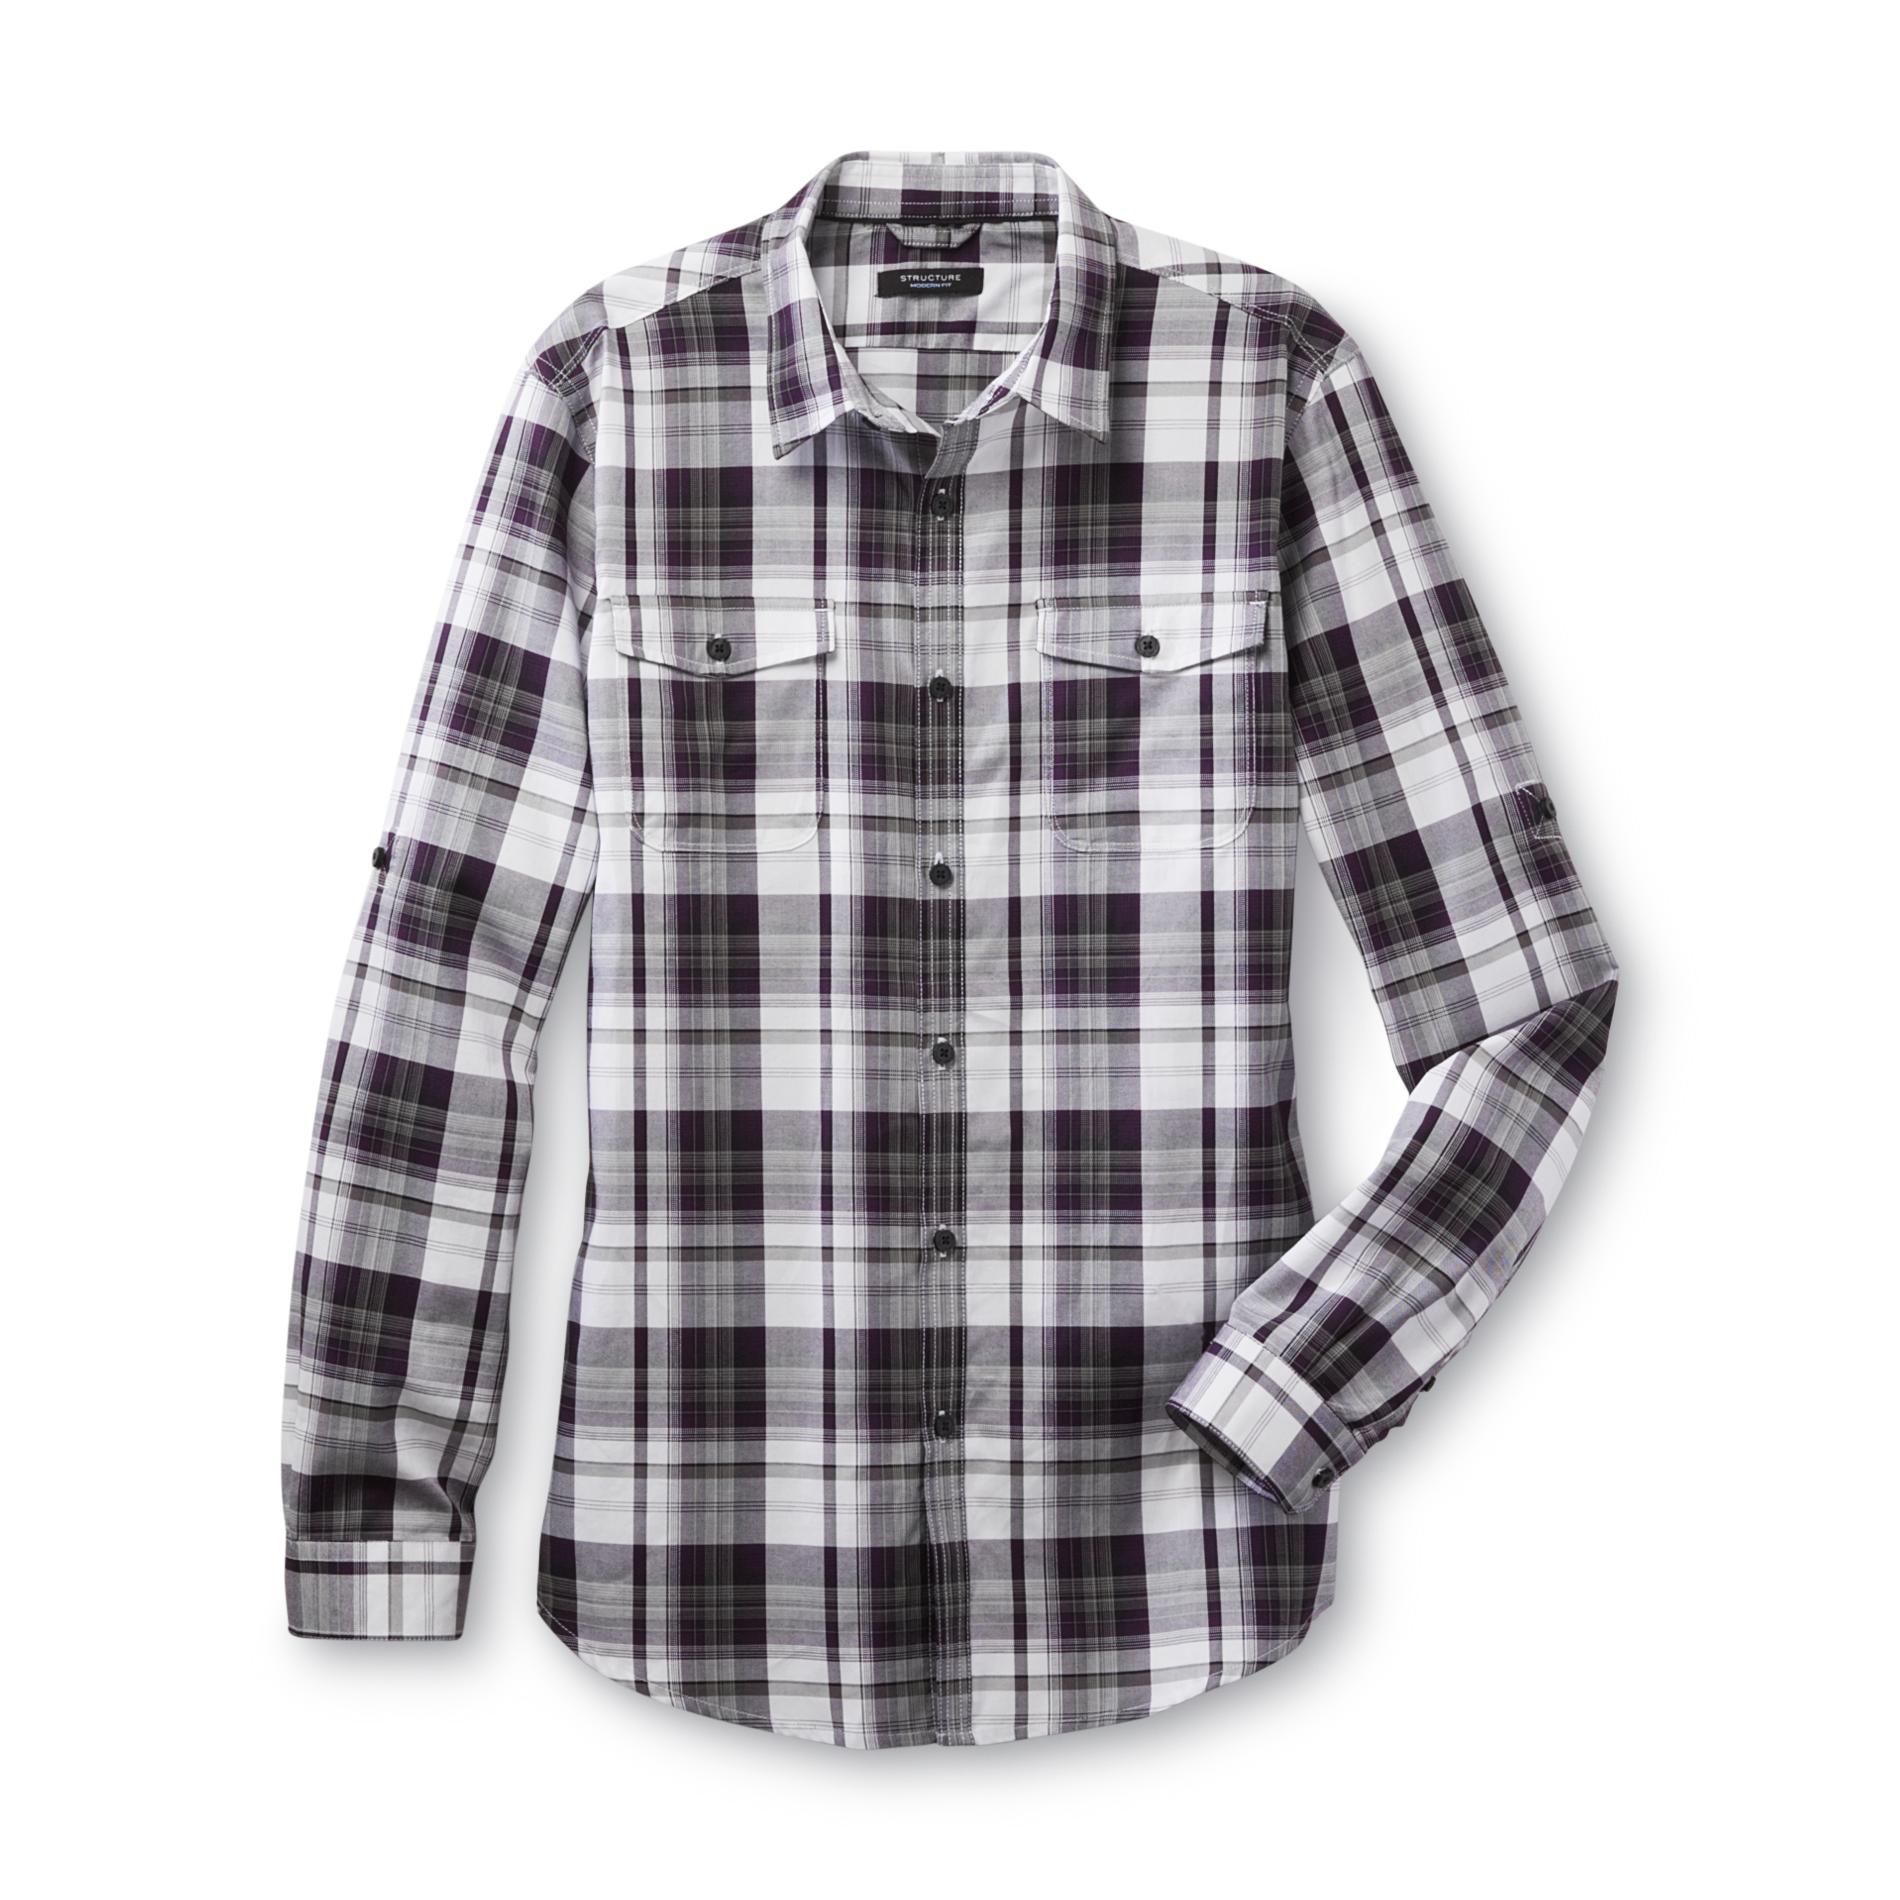 Structure Men's Long Sleeve Button Front Shirt - Plaid